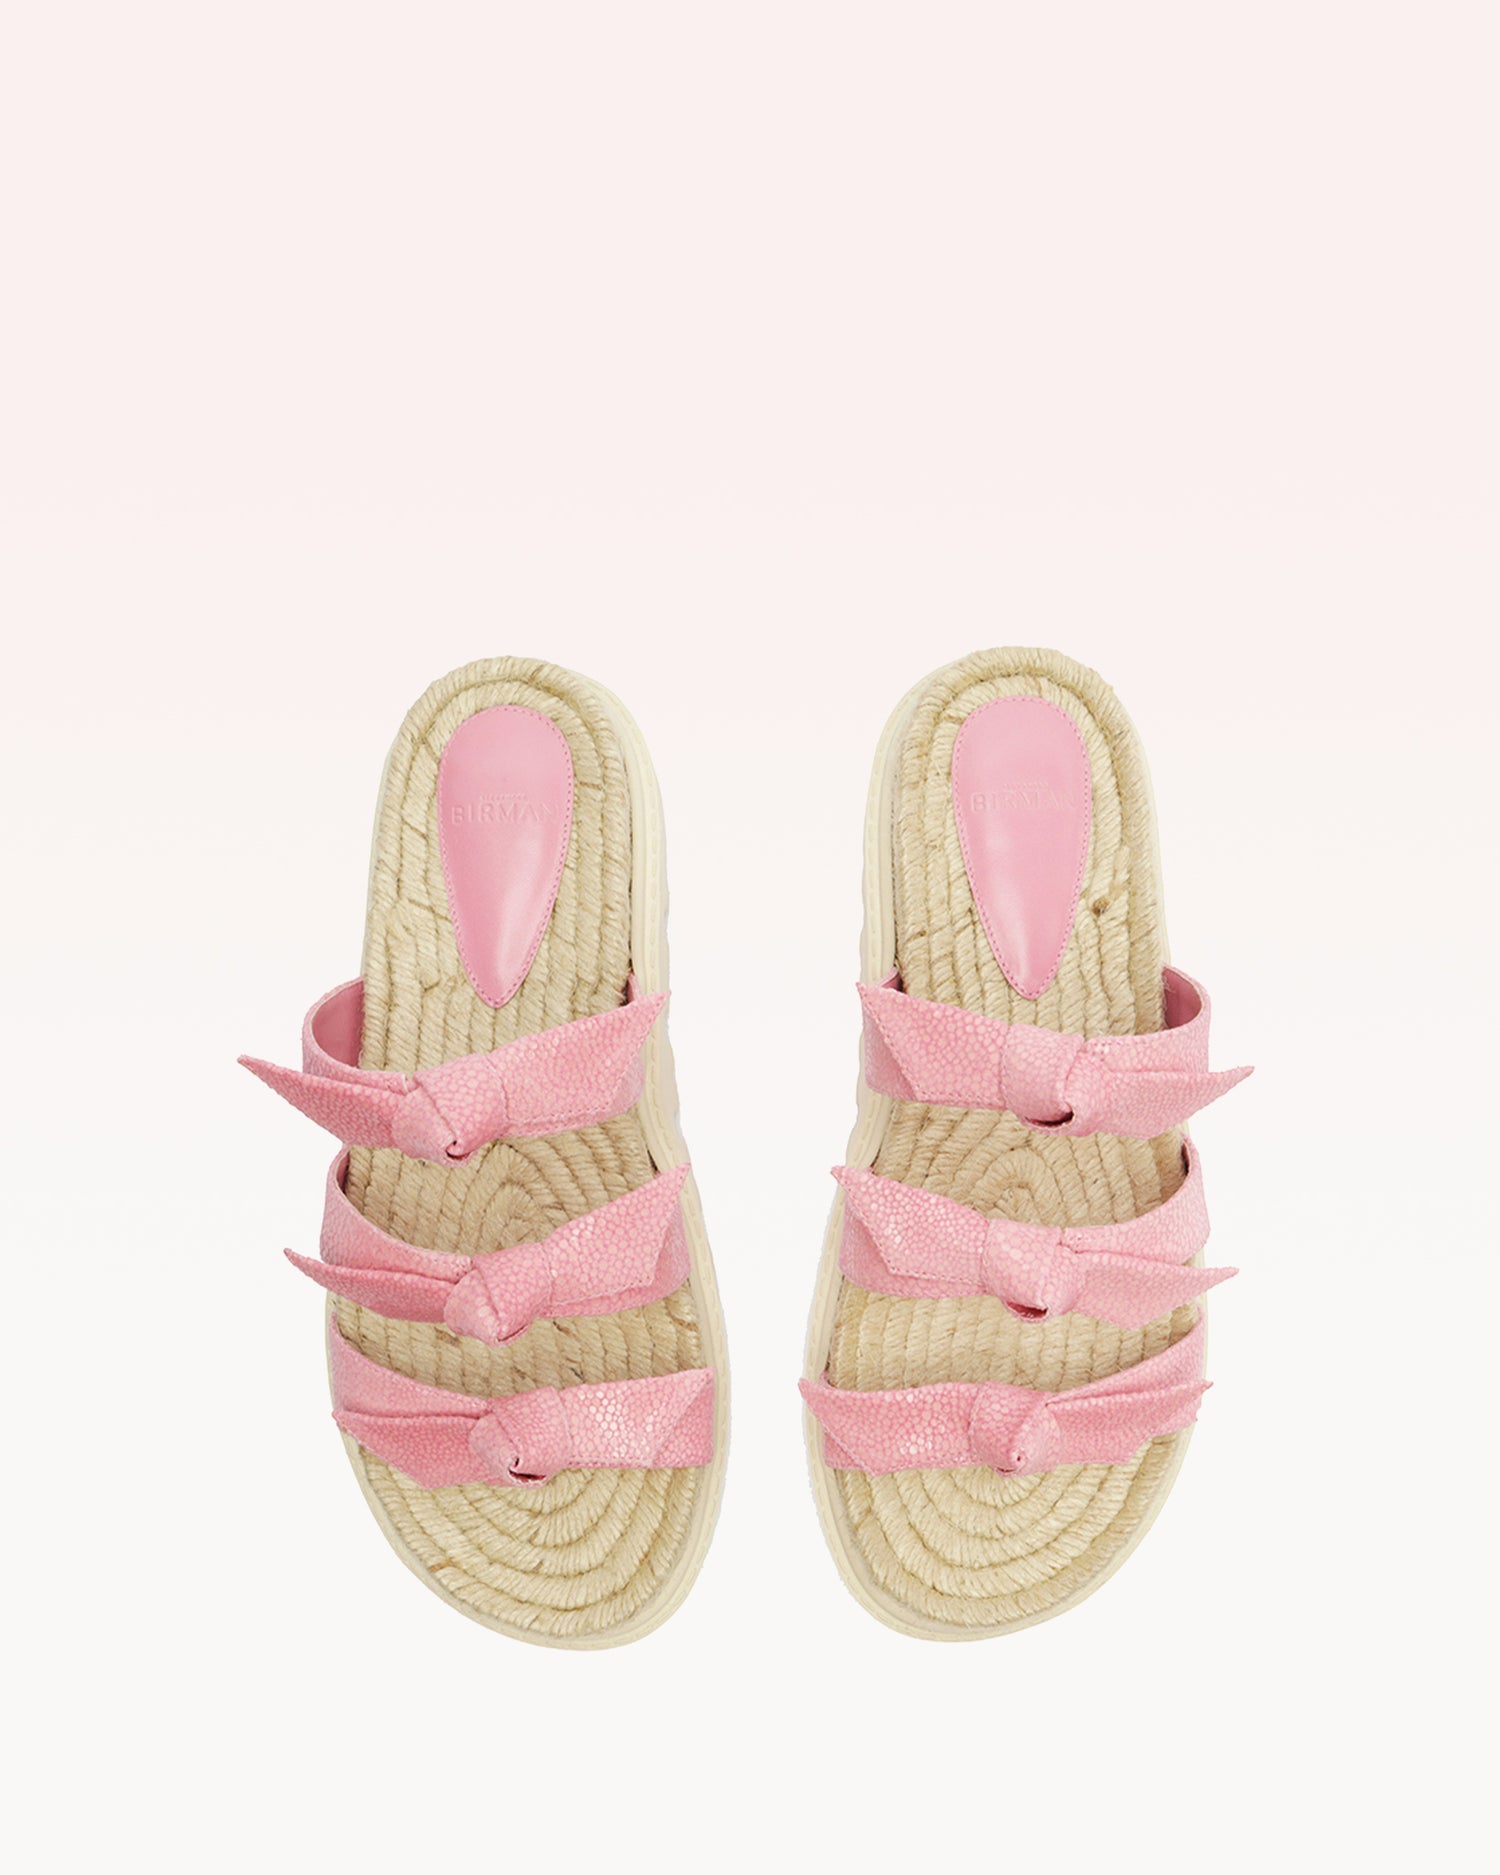 Lolita Espadrille Fresh Pink Sandals S/23   